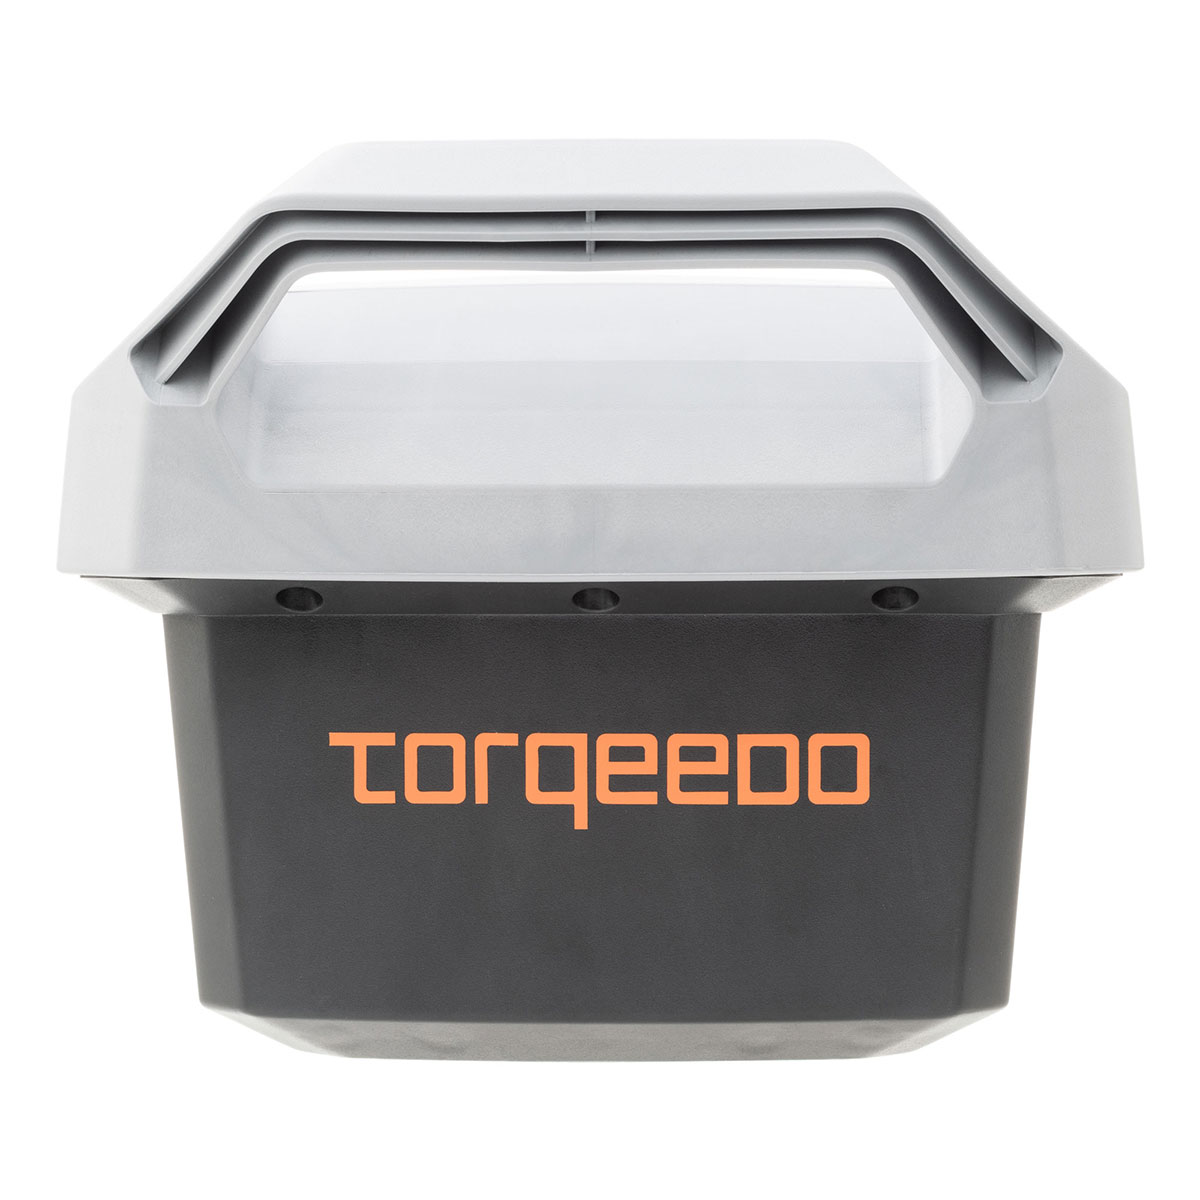 TORQEEDO Batterie - Wechselakku für die Modelle TRAVEL & TRAVEL XP - 1425 Wh